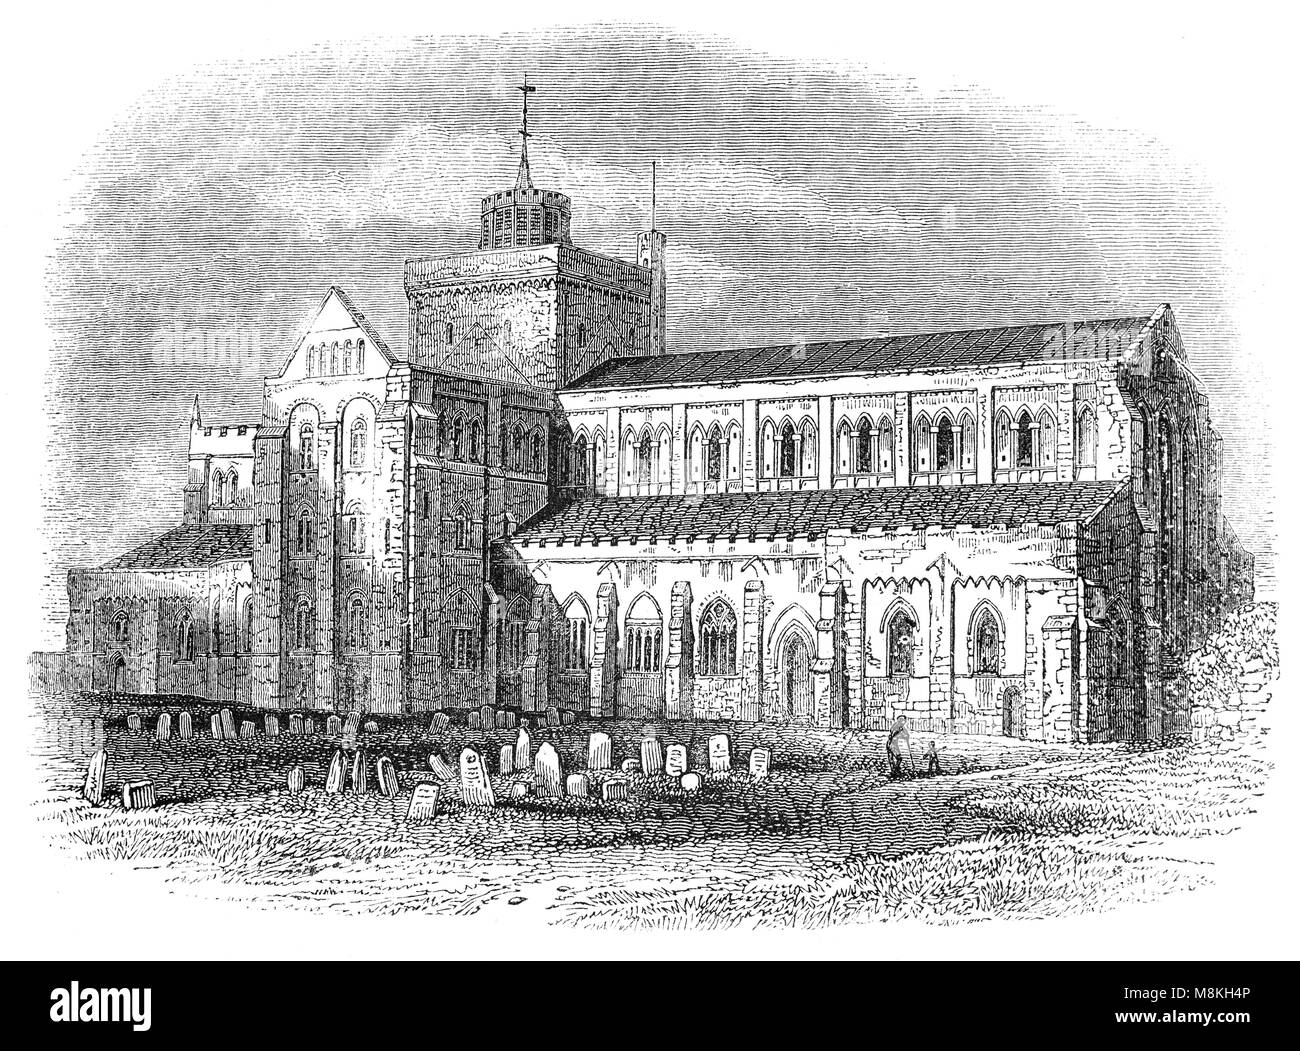 L'Abbaye de Romsey est une église paroissiale de l'Église d'Angleterre en Romsey, une ville de marché dans le Hampshire, en Angleterre. L'église a été construite au cours du 10e siècle, dans le cadre d'une fondation Bénédictine. Il a été supprimé par Henry VIII lors de la dissolution des monastères en 1539, mais n'a pas été démoli. C'était parce qu'il avait, en termes modernes, "double usage" contenant une église dans une église - une section substantielle étant dédiée à St Laurent et utilisés uniquement par les habitants de la ville. Banque D'Images